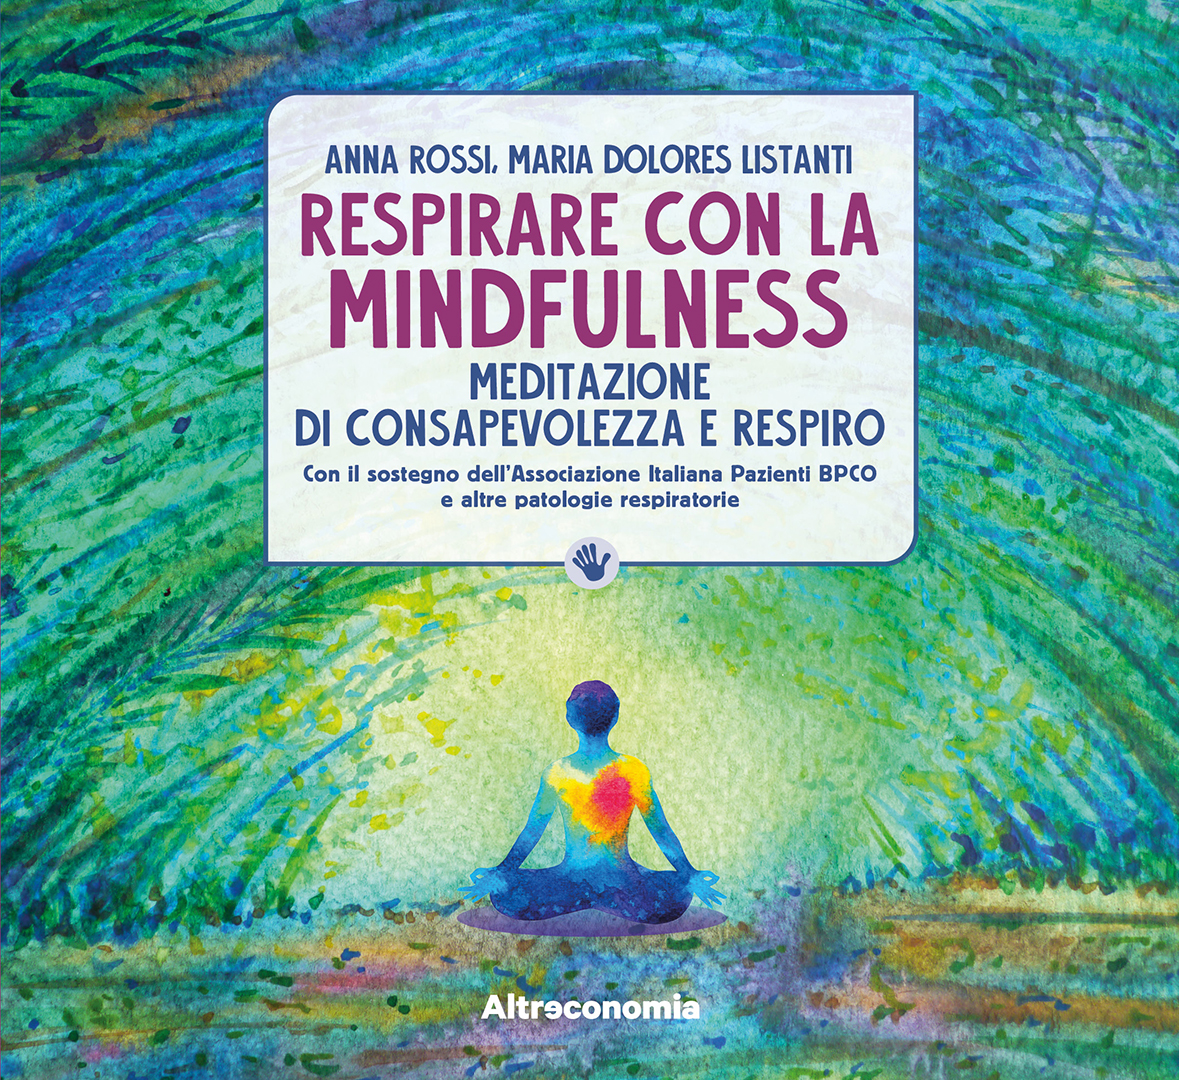 "Respirare con la mindfulness"